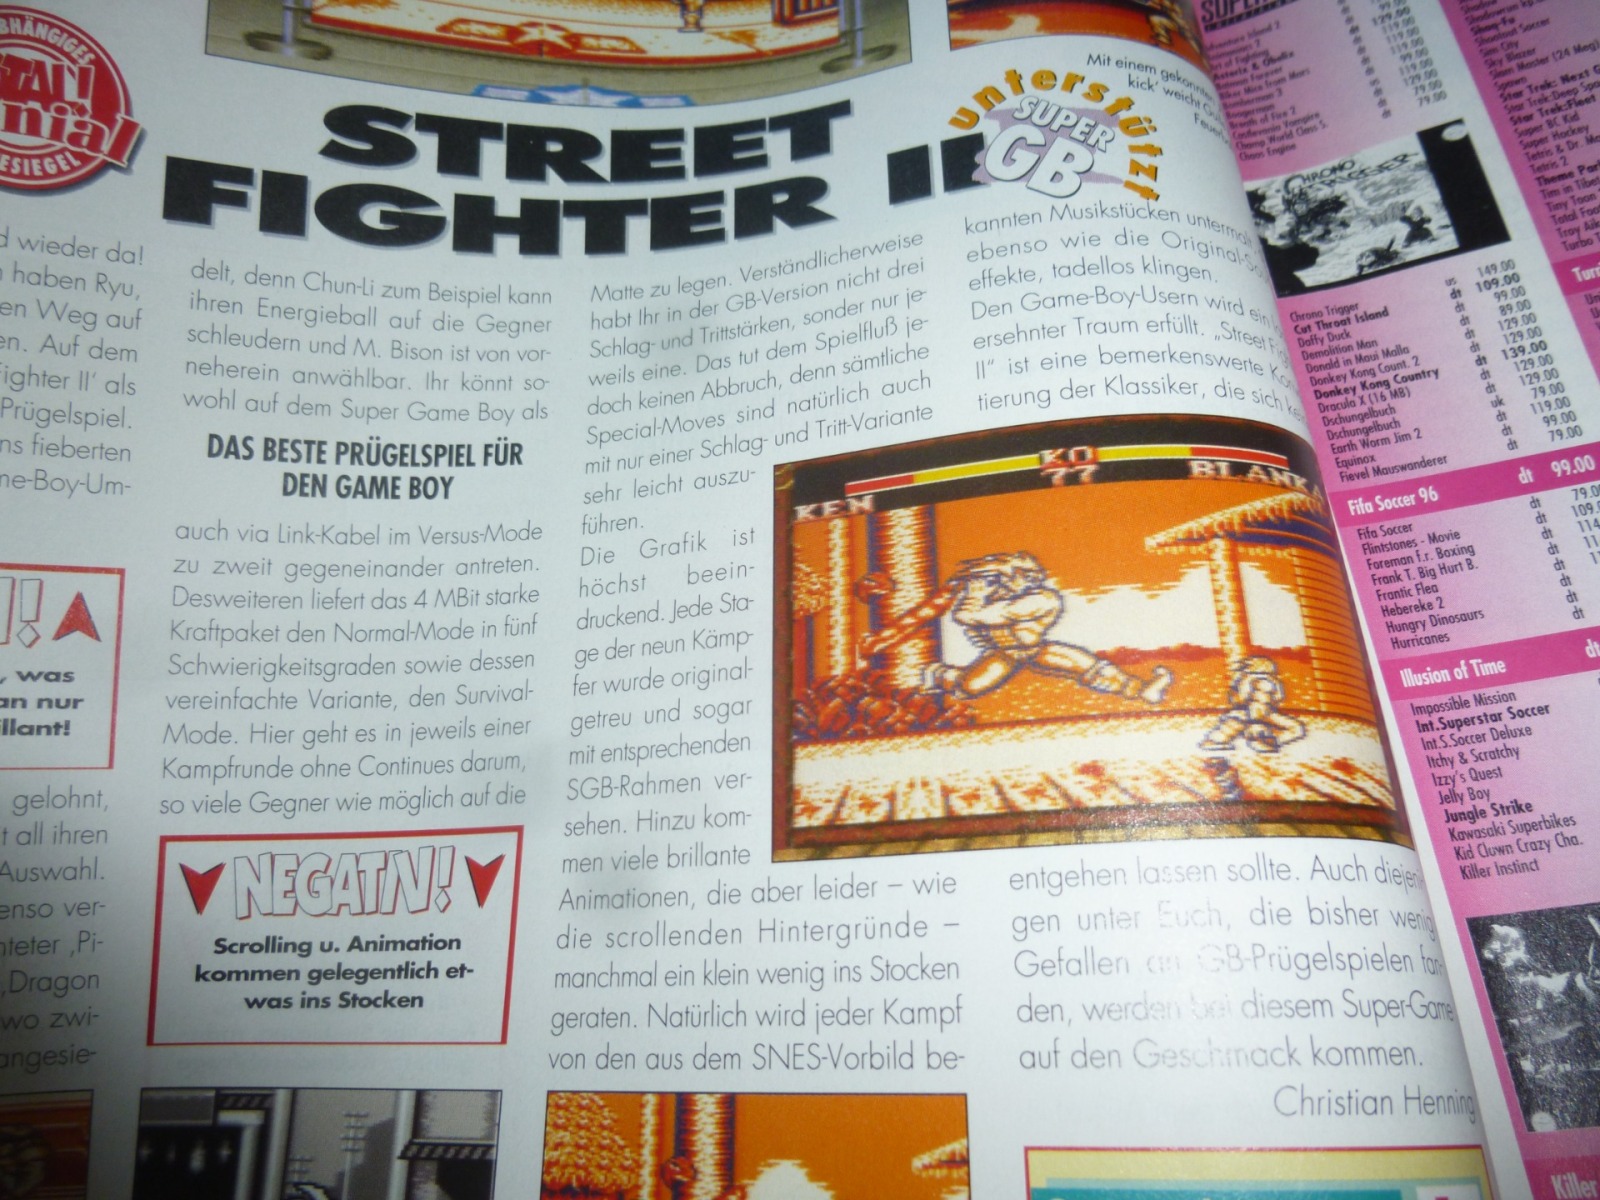 TOTAL Das unabhängige Magazin - 100% Nintendo - Ausgabe 2/96 1996 13